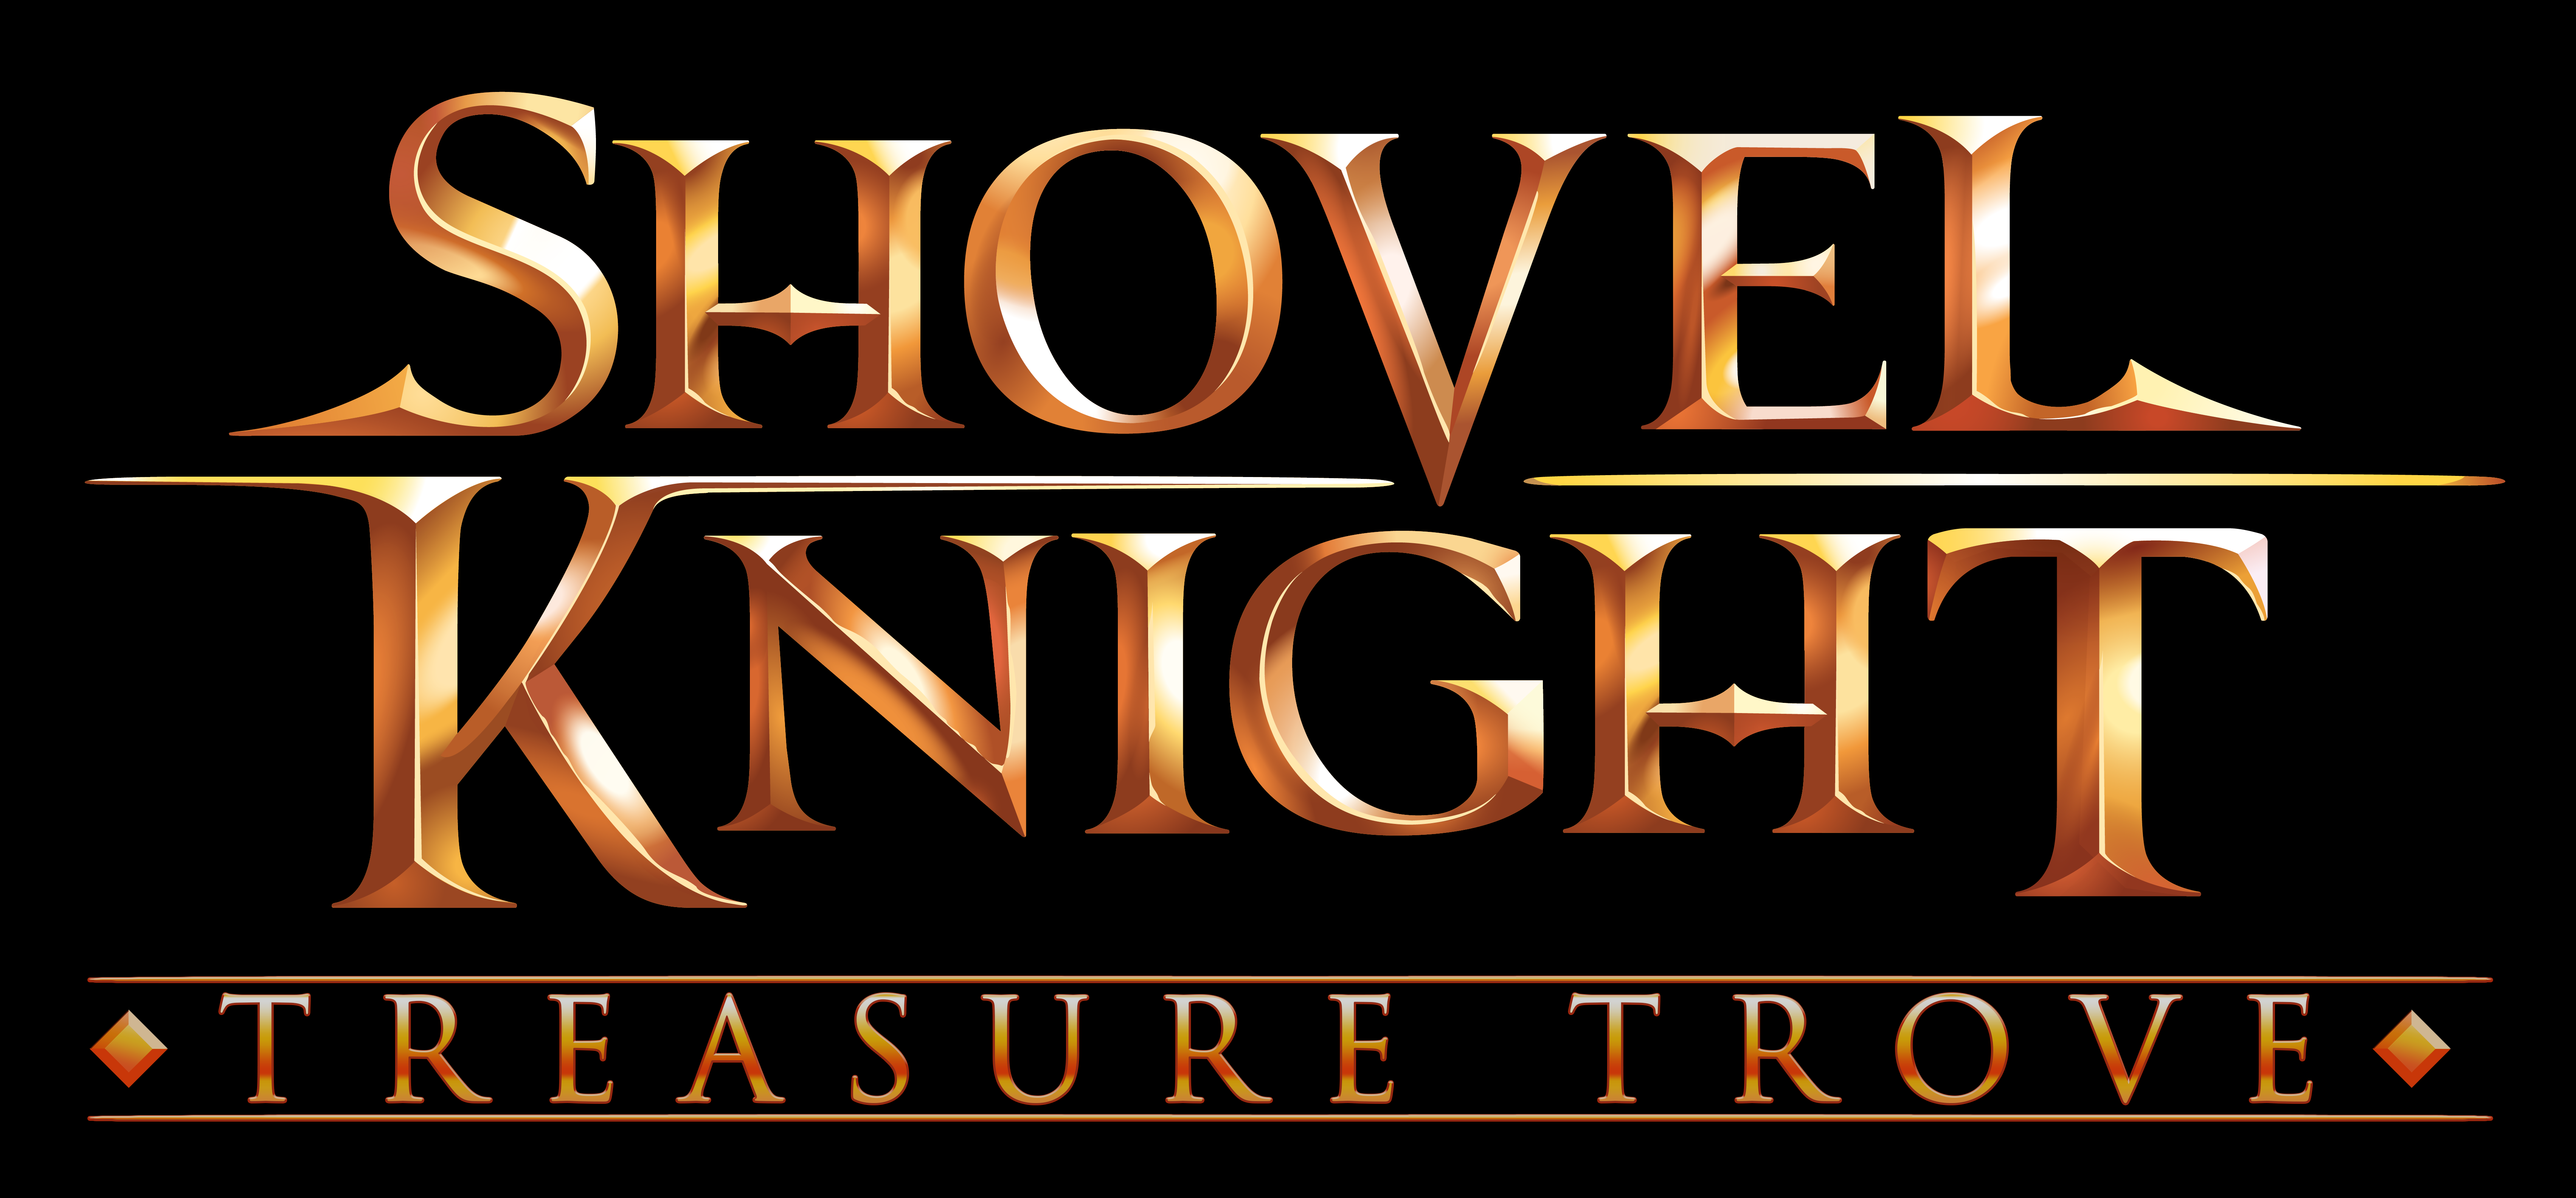 shovel-knight-treasure-trove